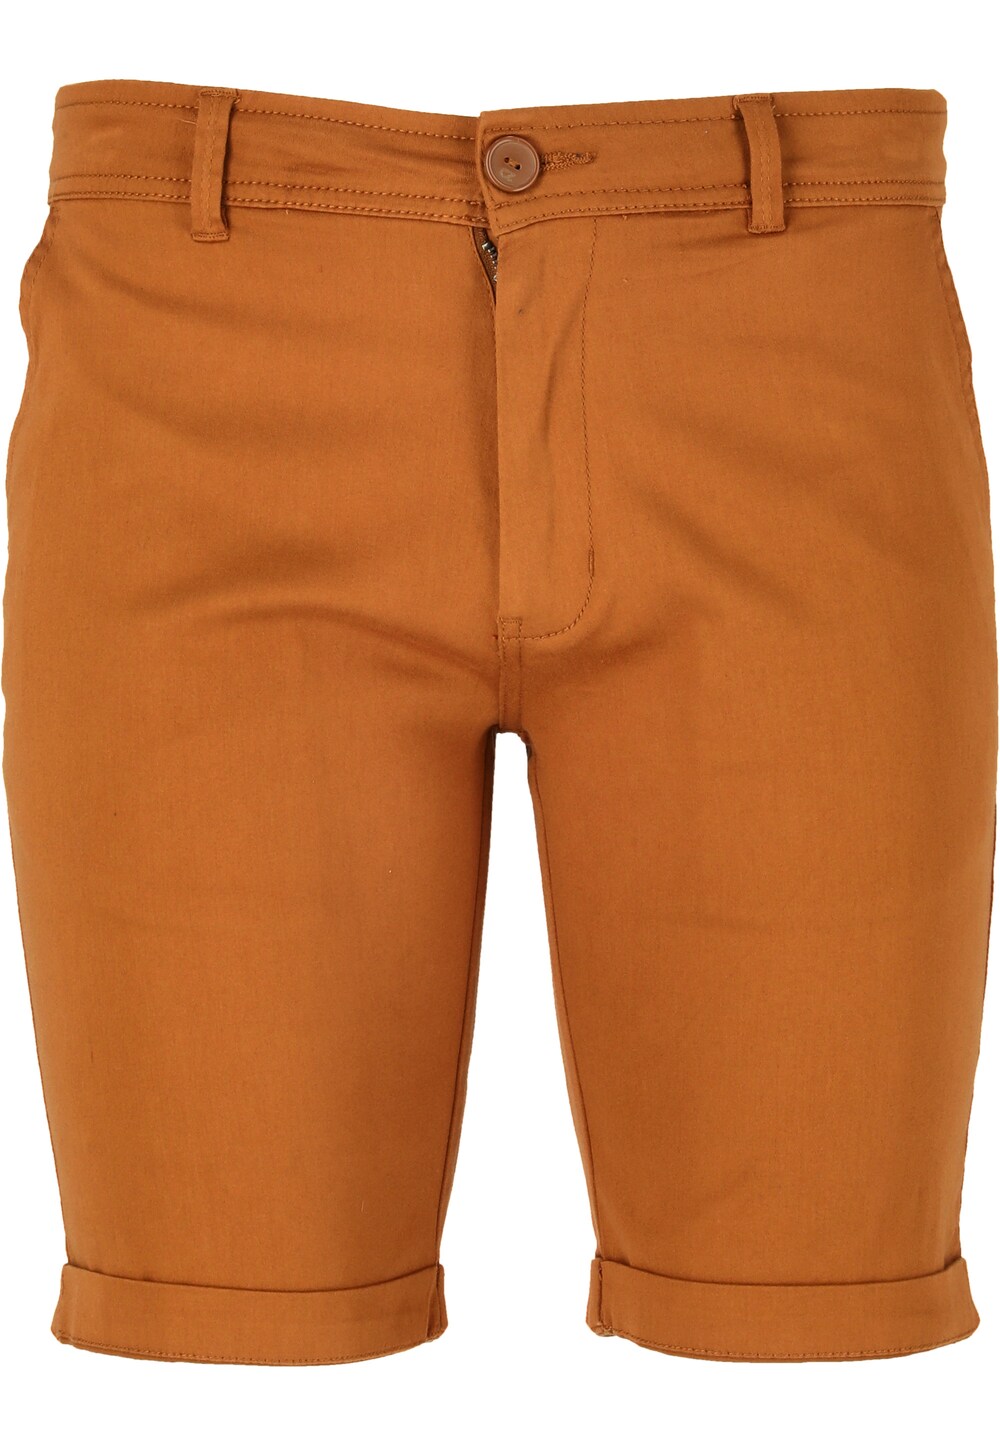 Обычные брюки Cruz Jerryne, апельсин